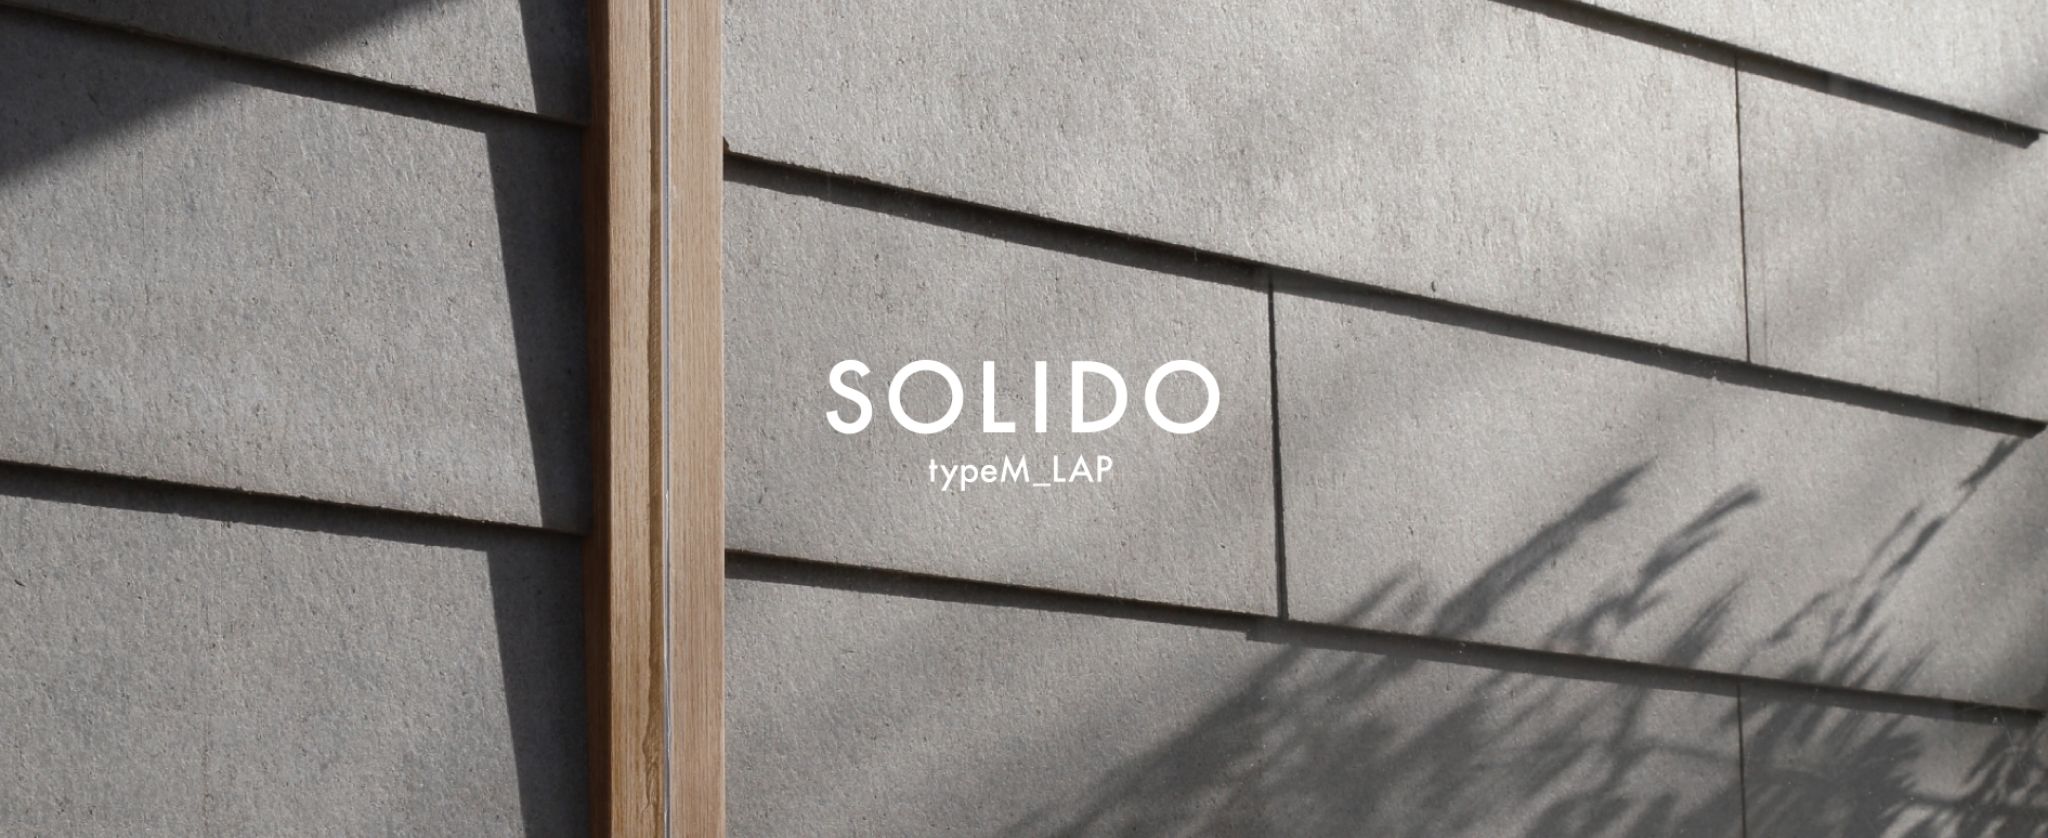 経年変化で魅力を増す外壁材「SOLIDO」